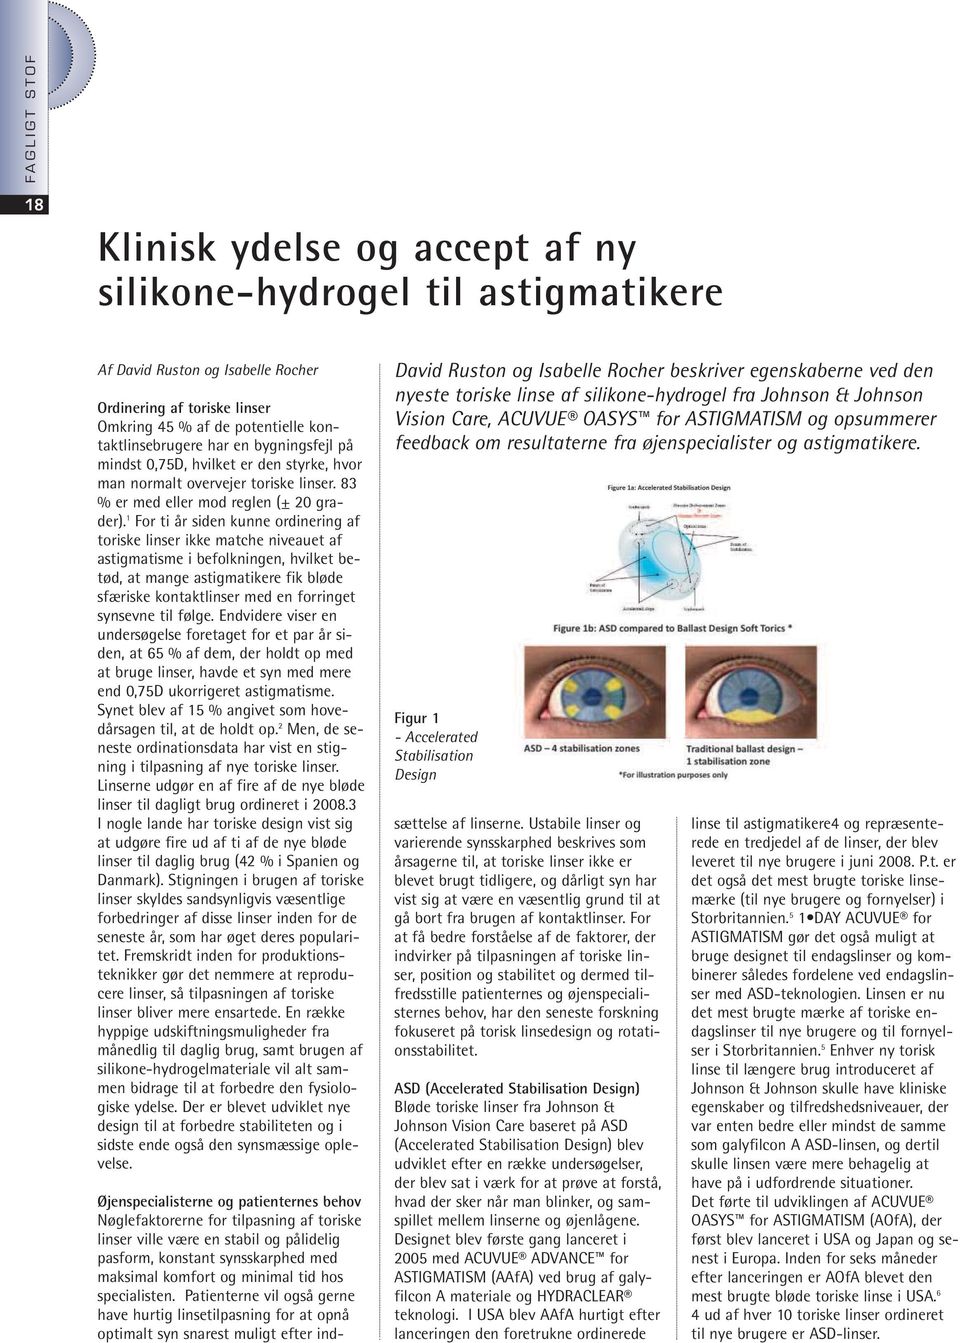 1 For ti år siden kunne ordinering af toriske linser ikke matche niveauet af astigmatisme i befolkningen, hvilket betød, at mange astigmatikere fik bløde sfæriske kontaktlinser med en forringet